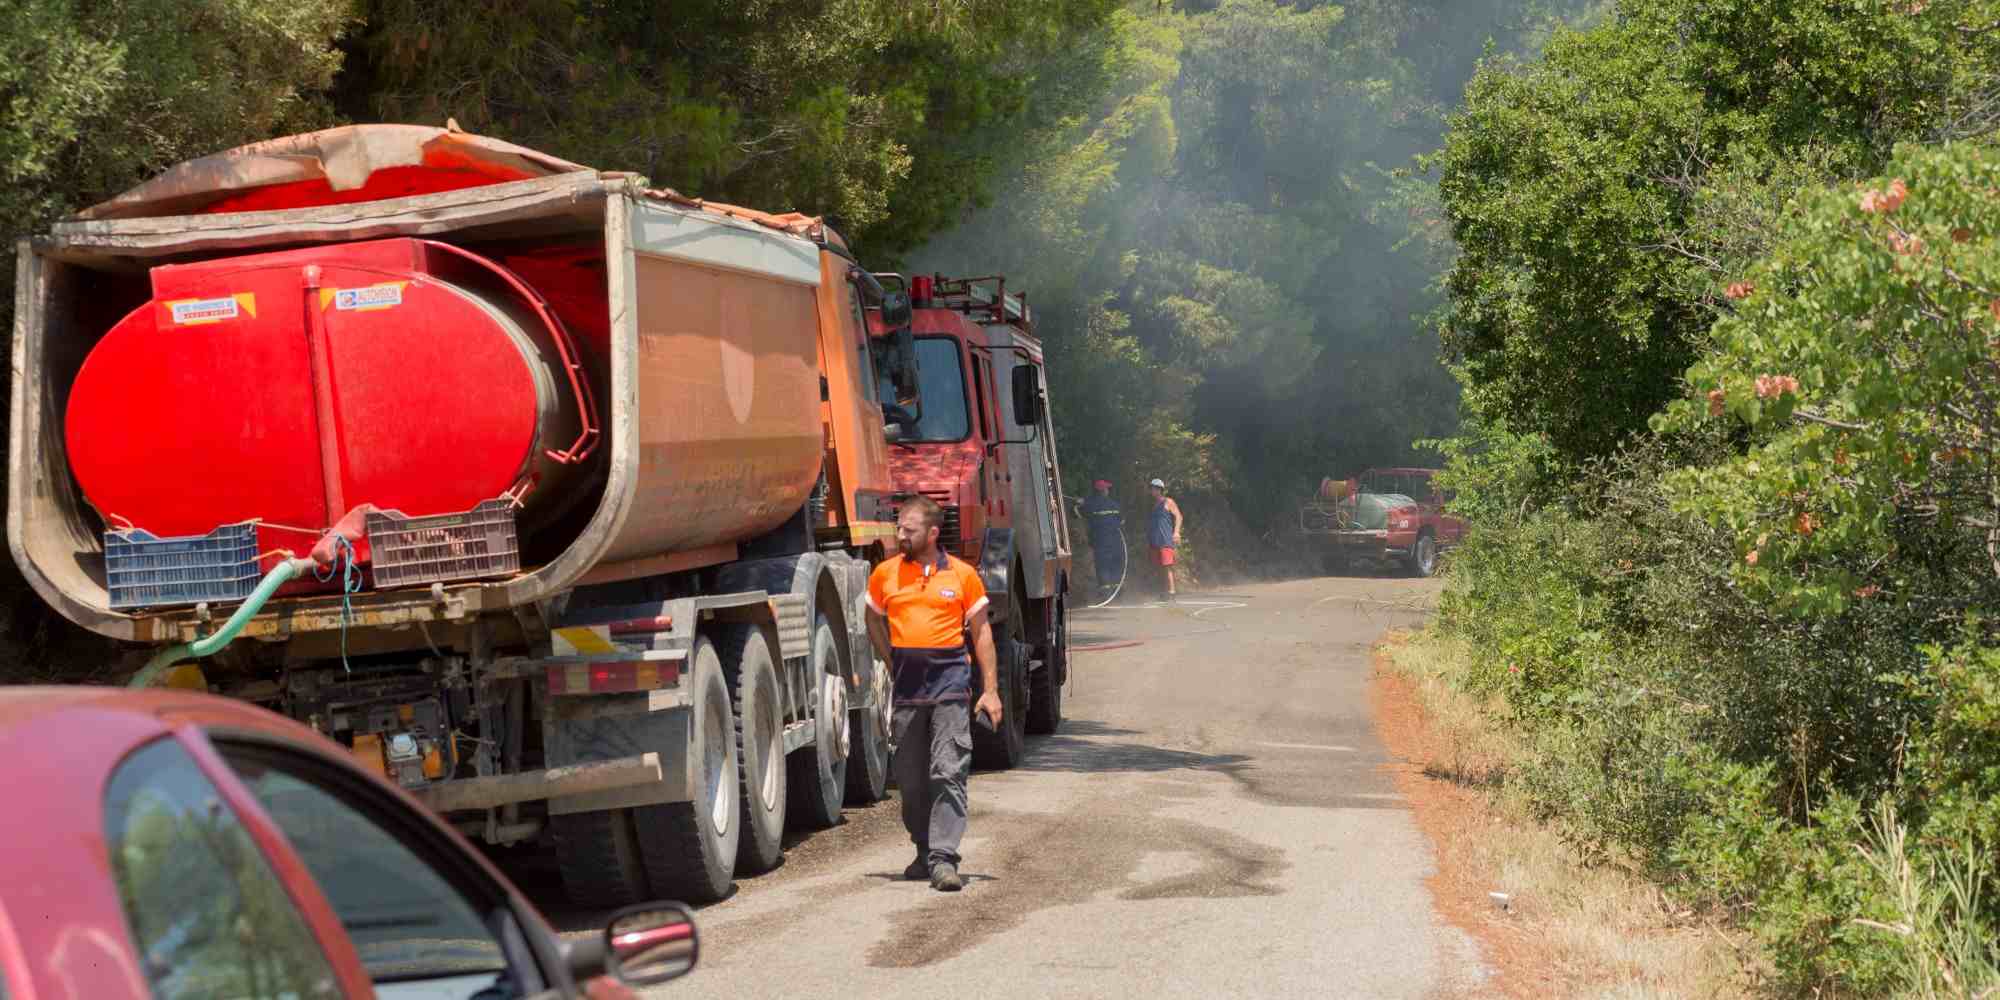 Πυροσβεστικό και υδροφόρο όχημα επιχειρούν στην κατάσβεση της πυρκαγιάς στα Κρέστενα στην Ηλεία